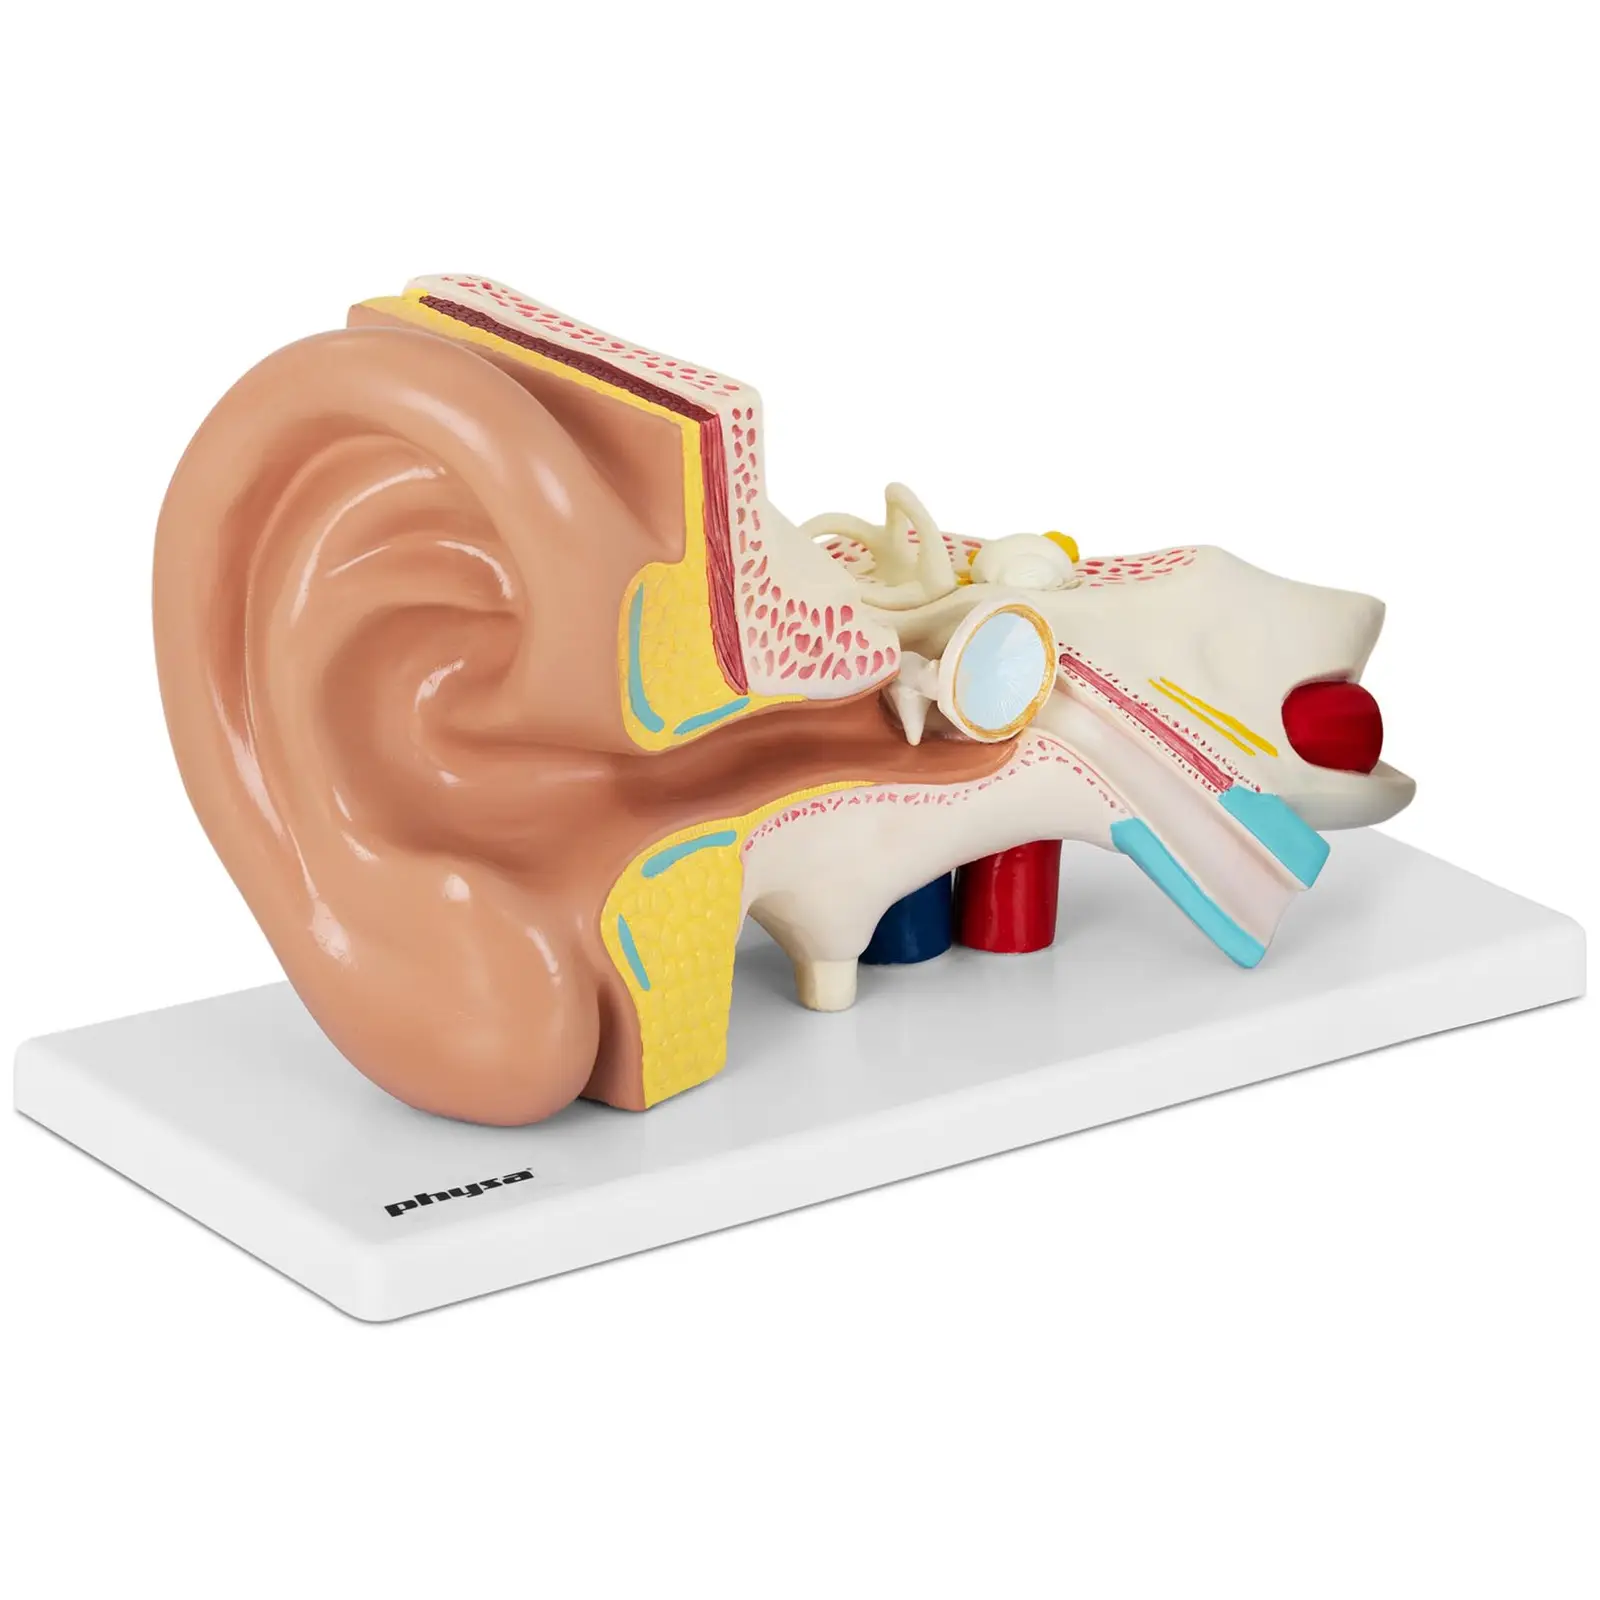 Modello orecchio - Smontabile in 4 parti- Ingrandimento 2x